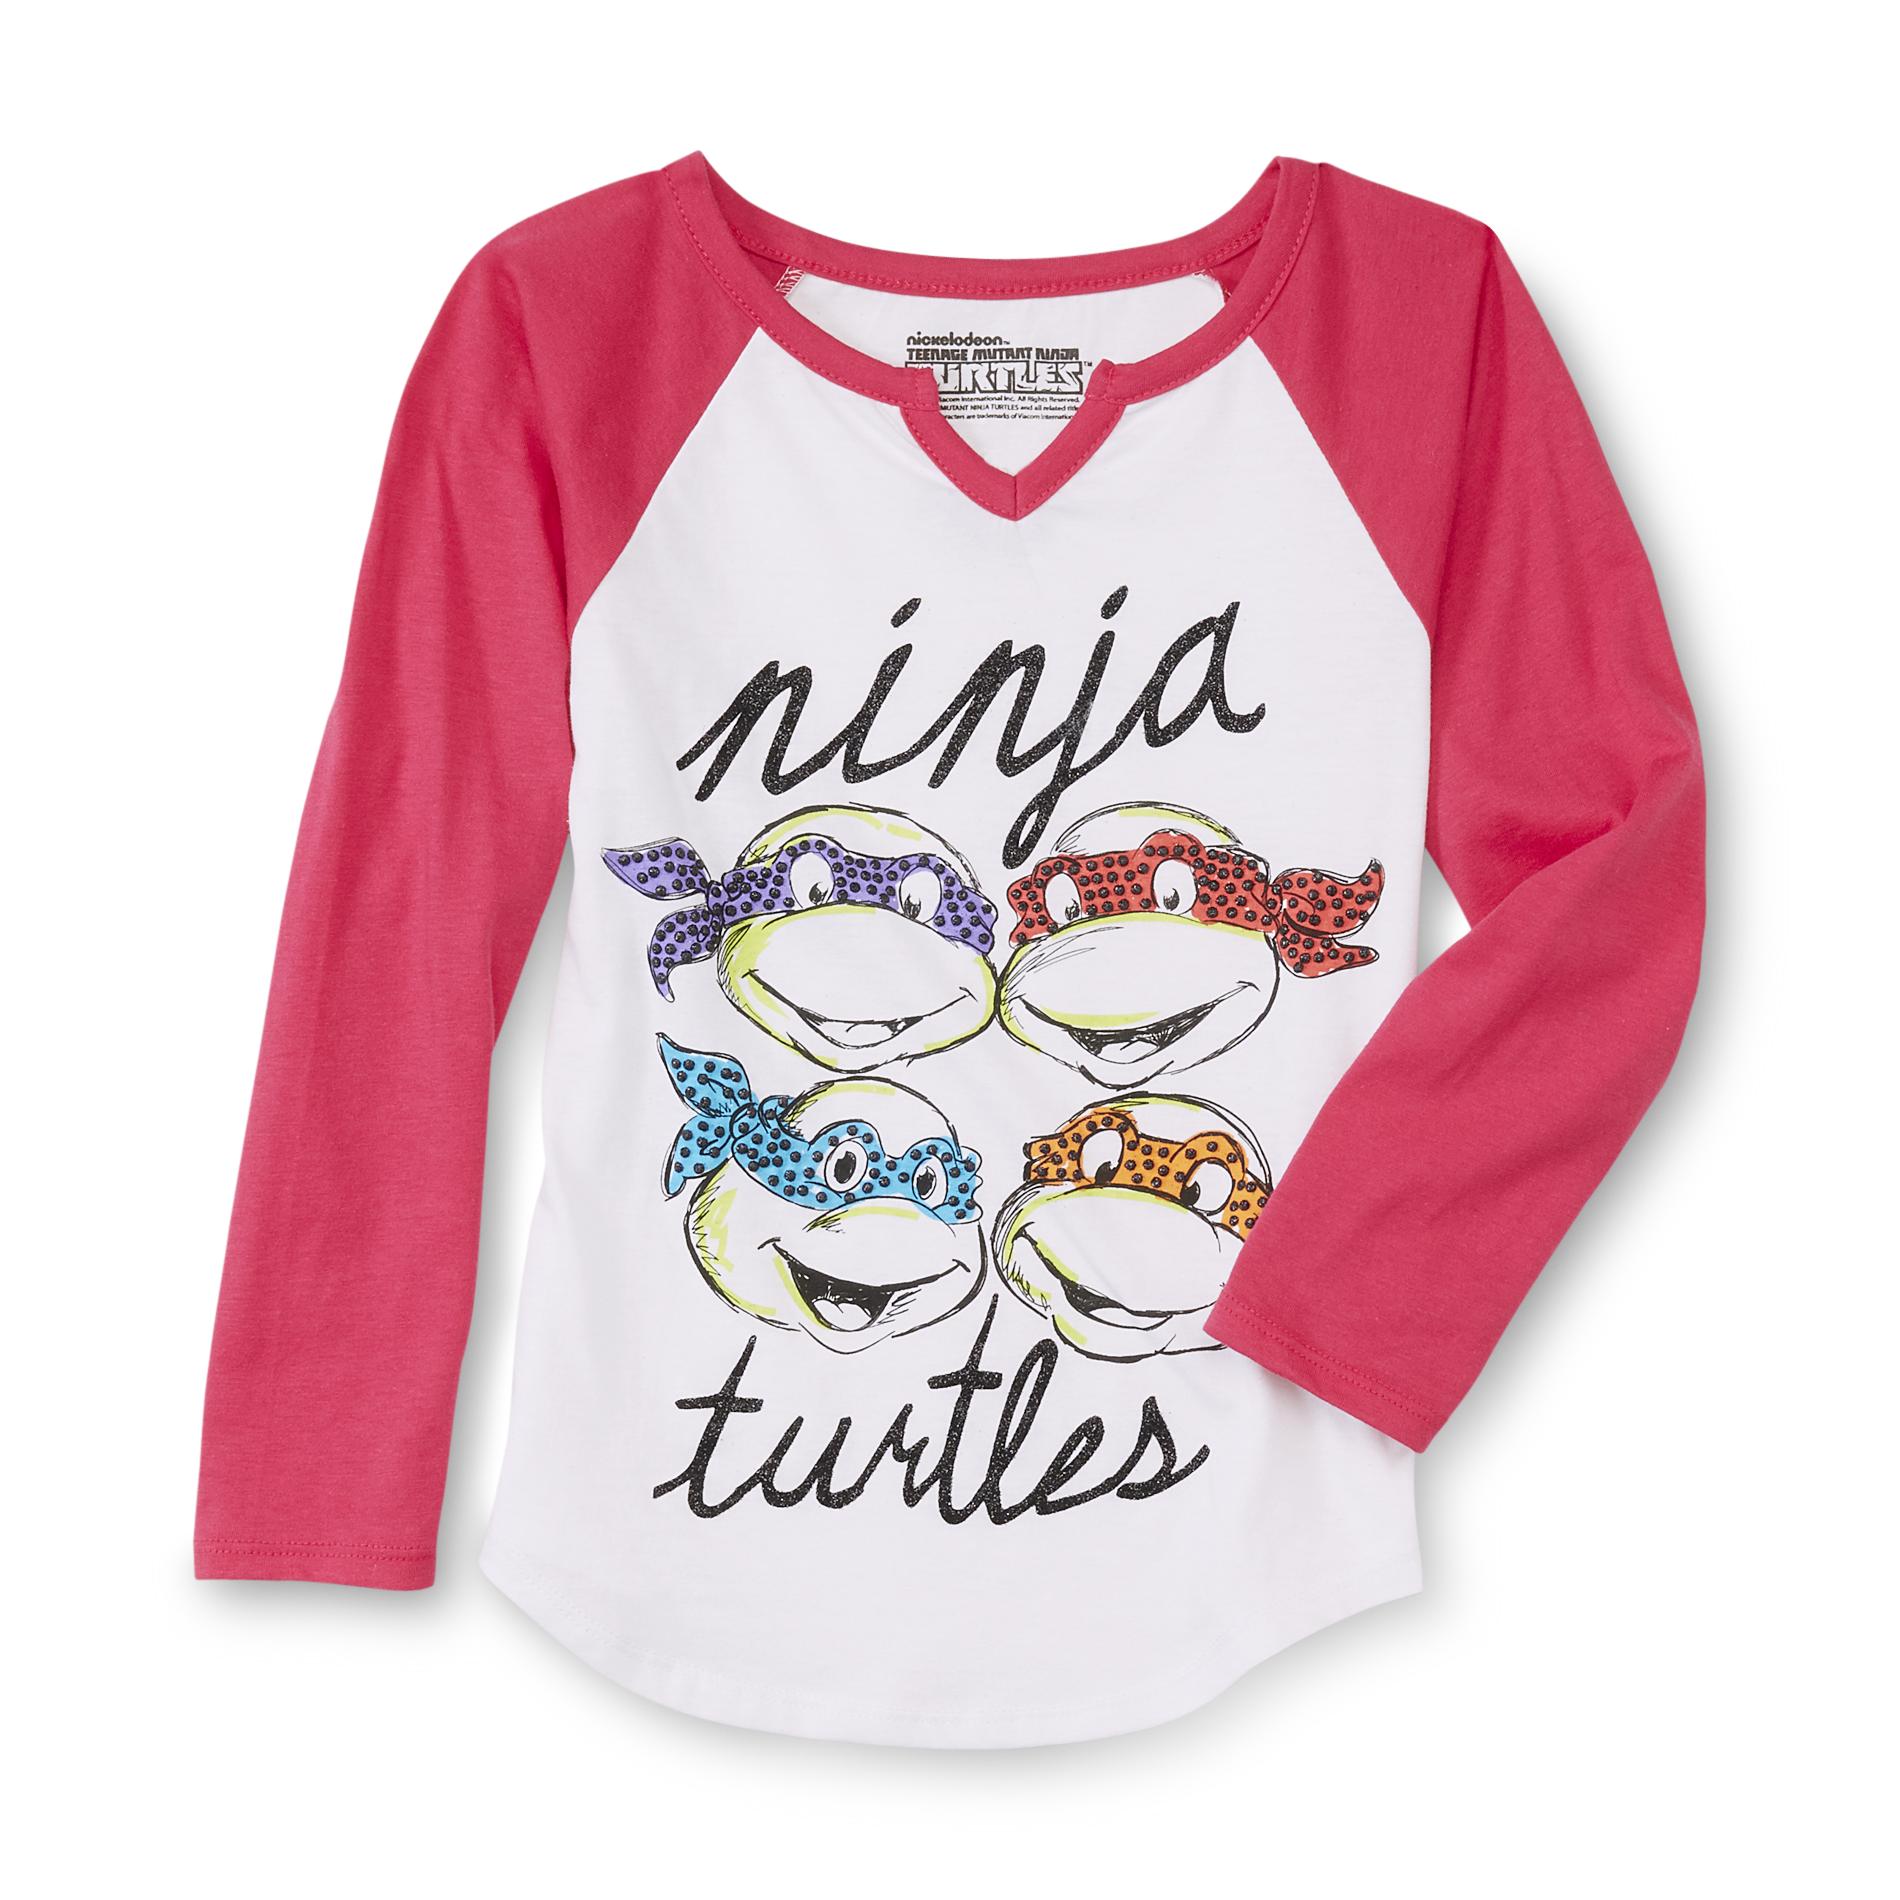 Nickelodeon Teenage Mutant Ninja Turtles Girl's Graphic T-Shirt - Glittered